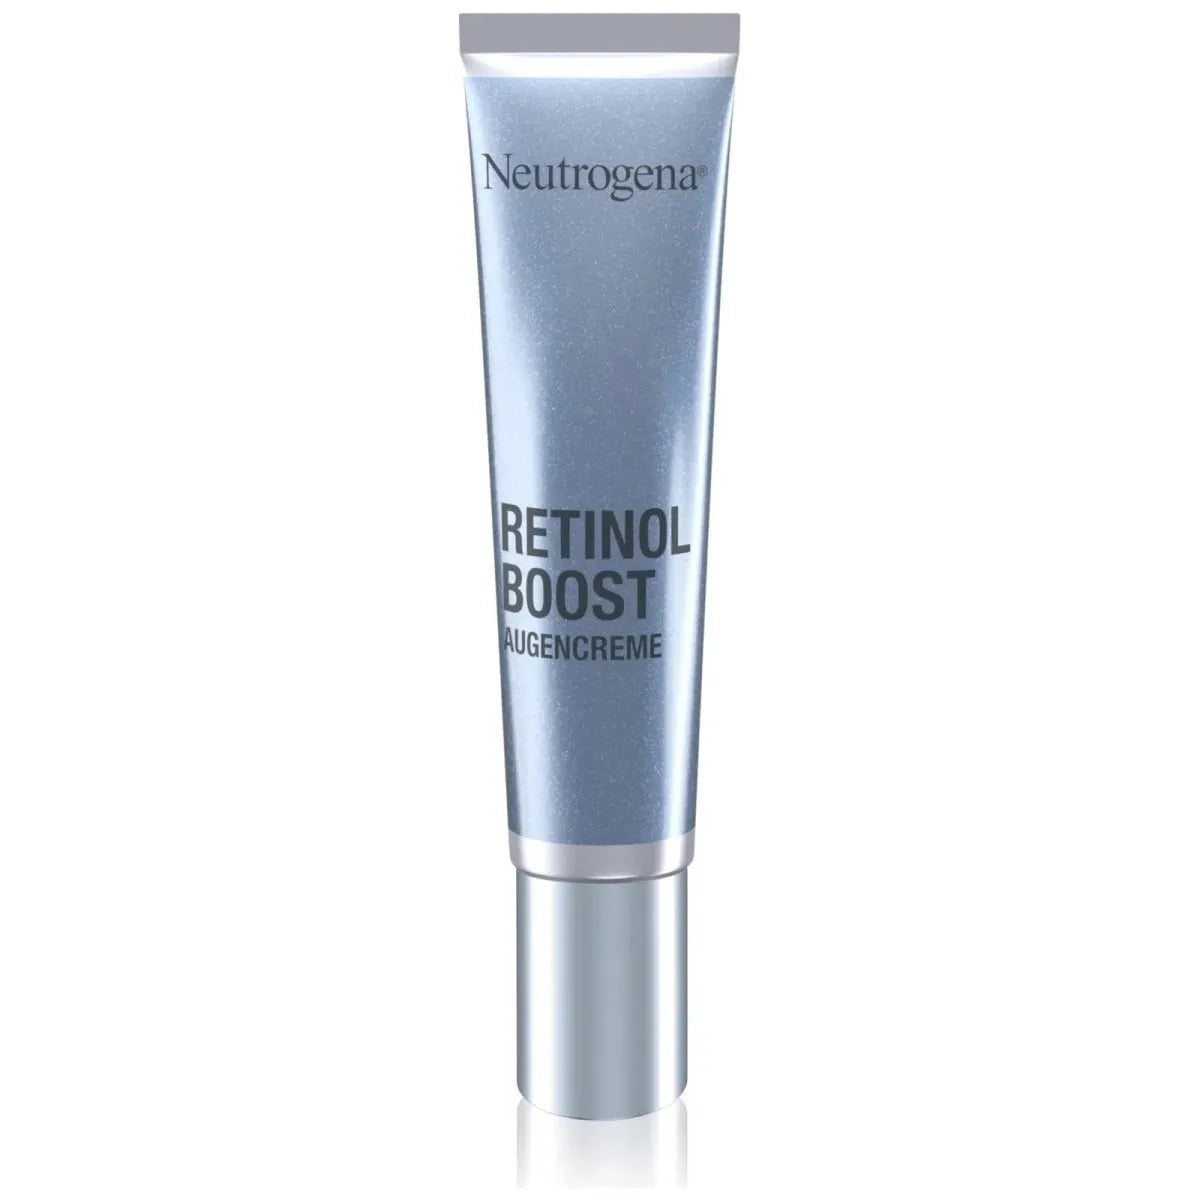 Neutrogena Retinol Boost eye cream - 15ml - Glam Global UK